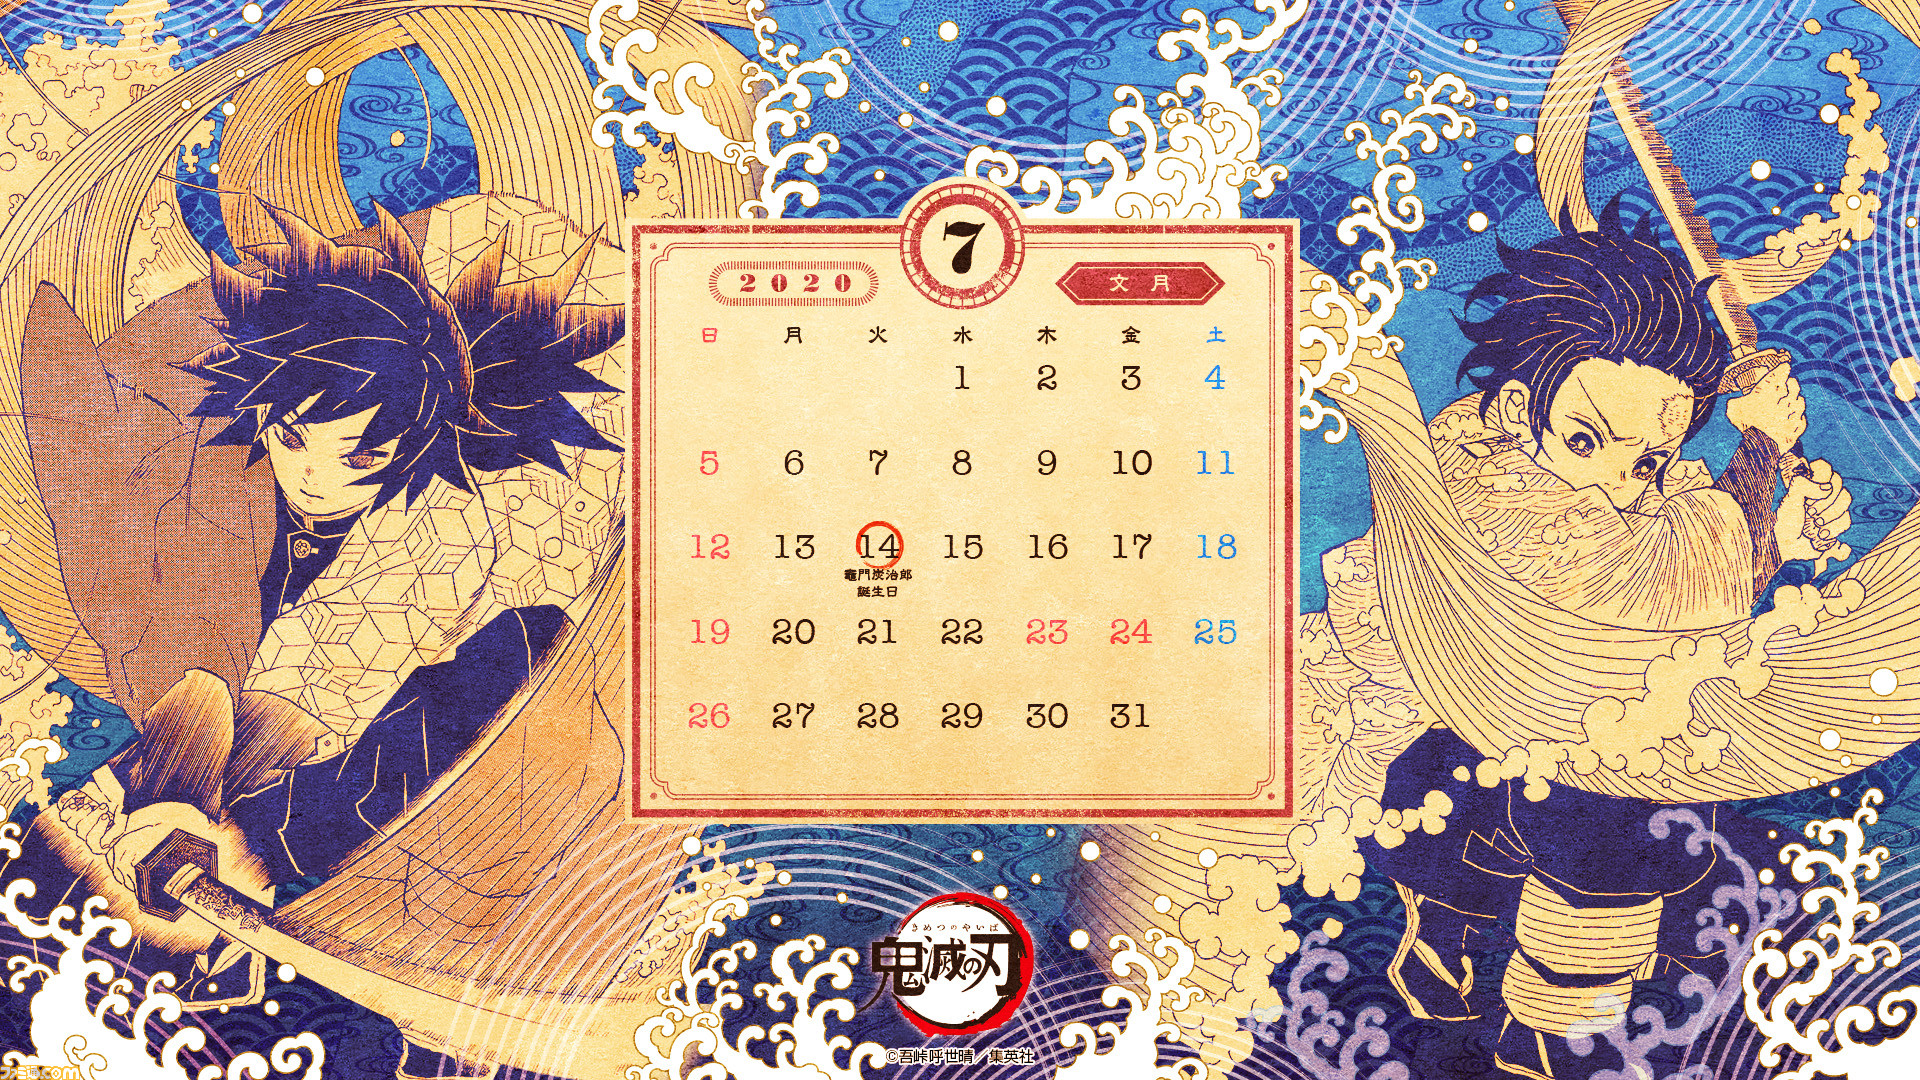 鬼滅の刃 カレンダーになる壁紙画像が公式サイトで配布中 技をくり出す炭治郎と義勇をデザイン ファミ通 Com